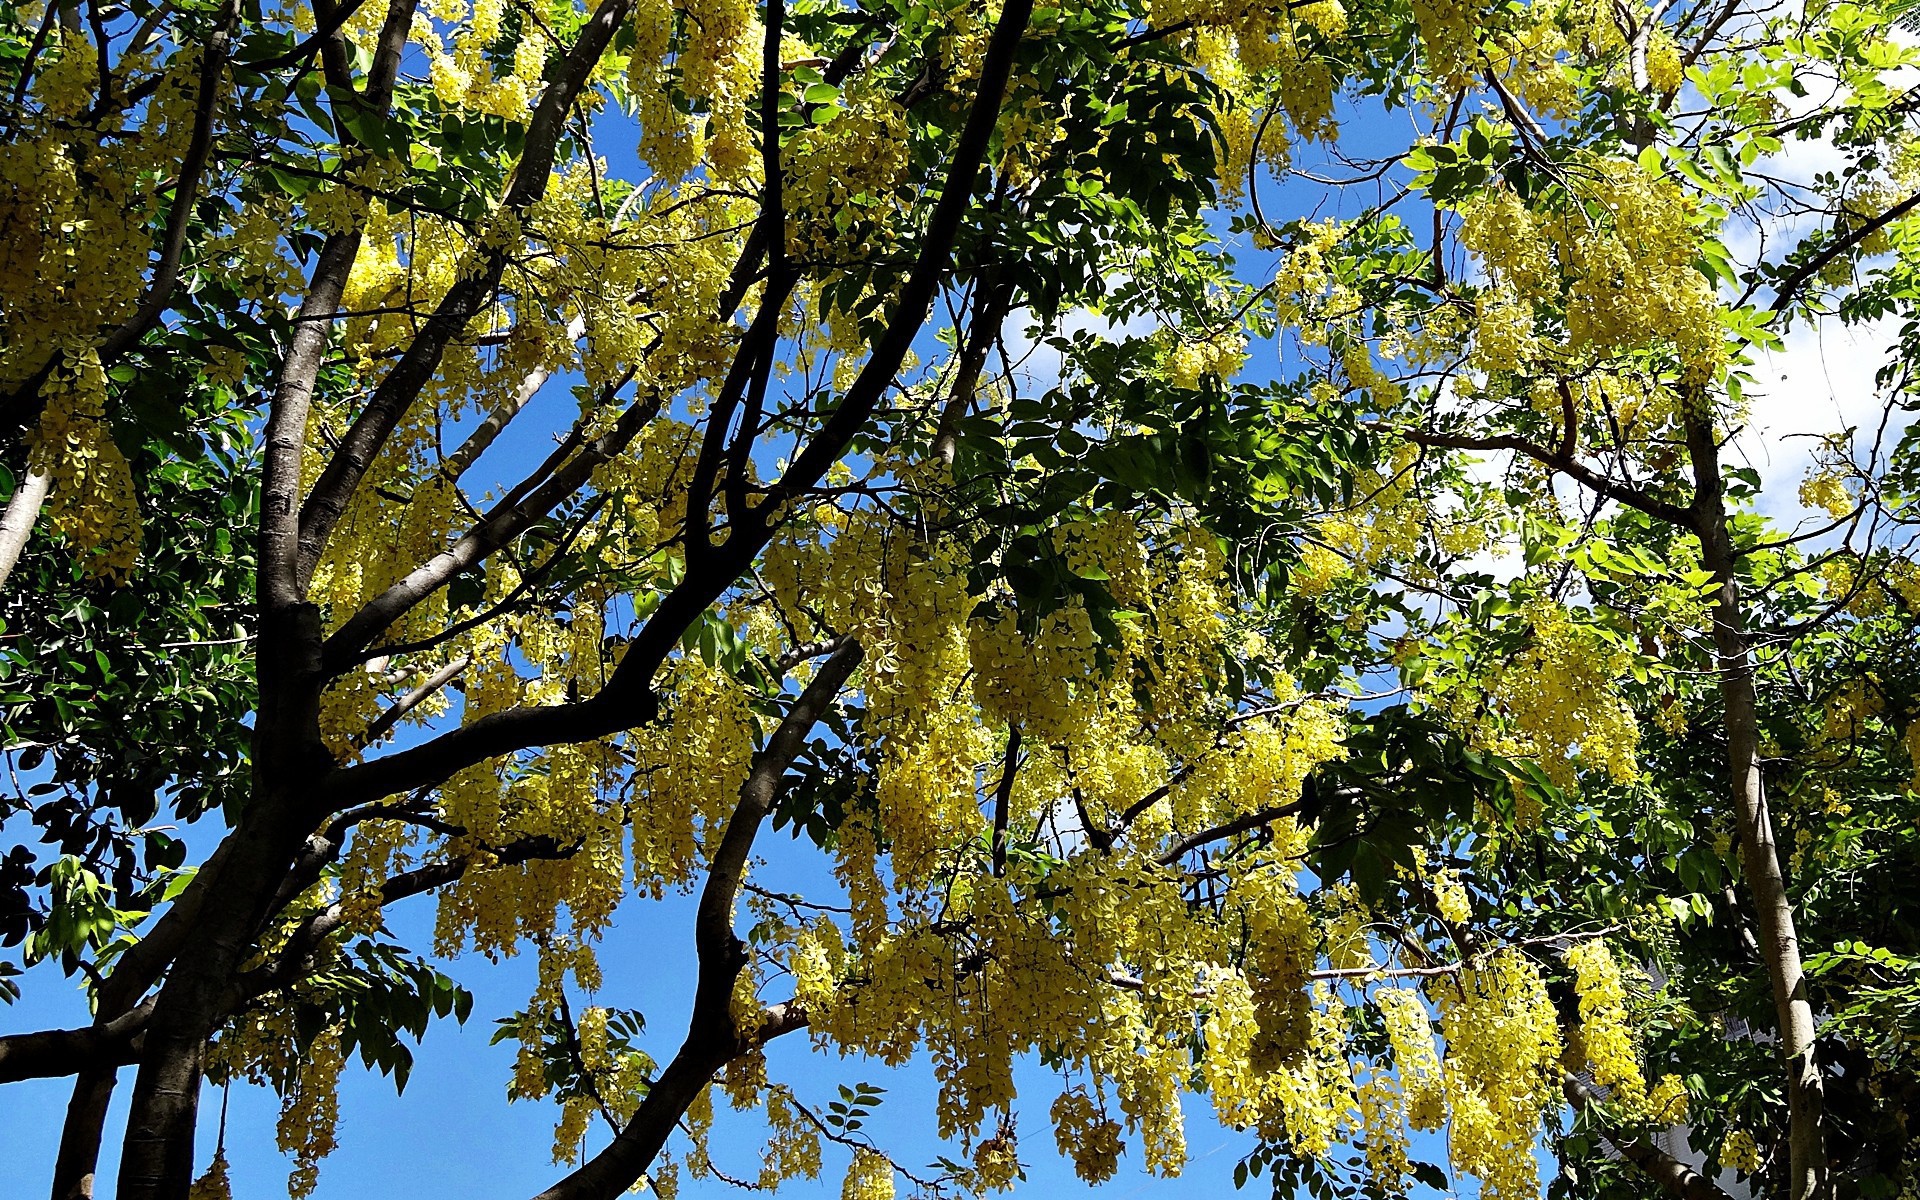 Yellow flowering